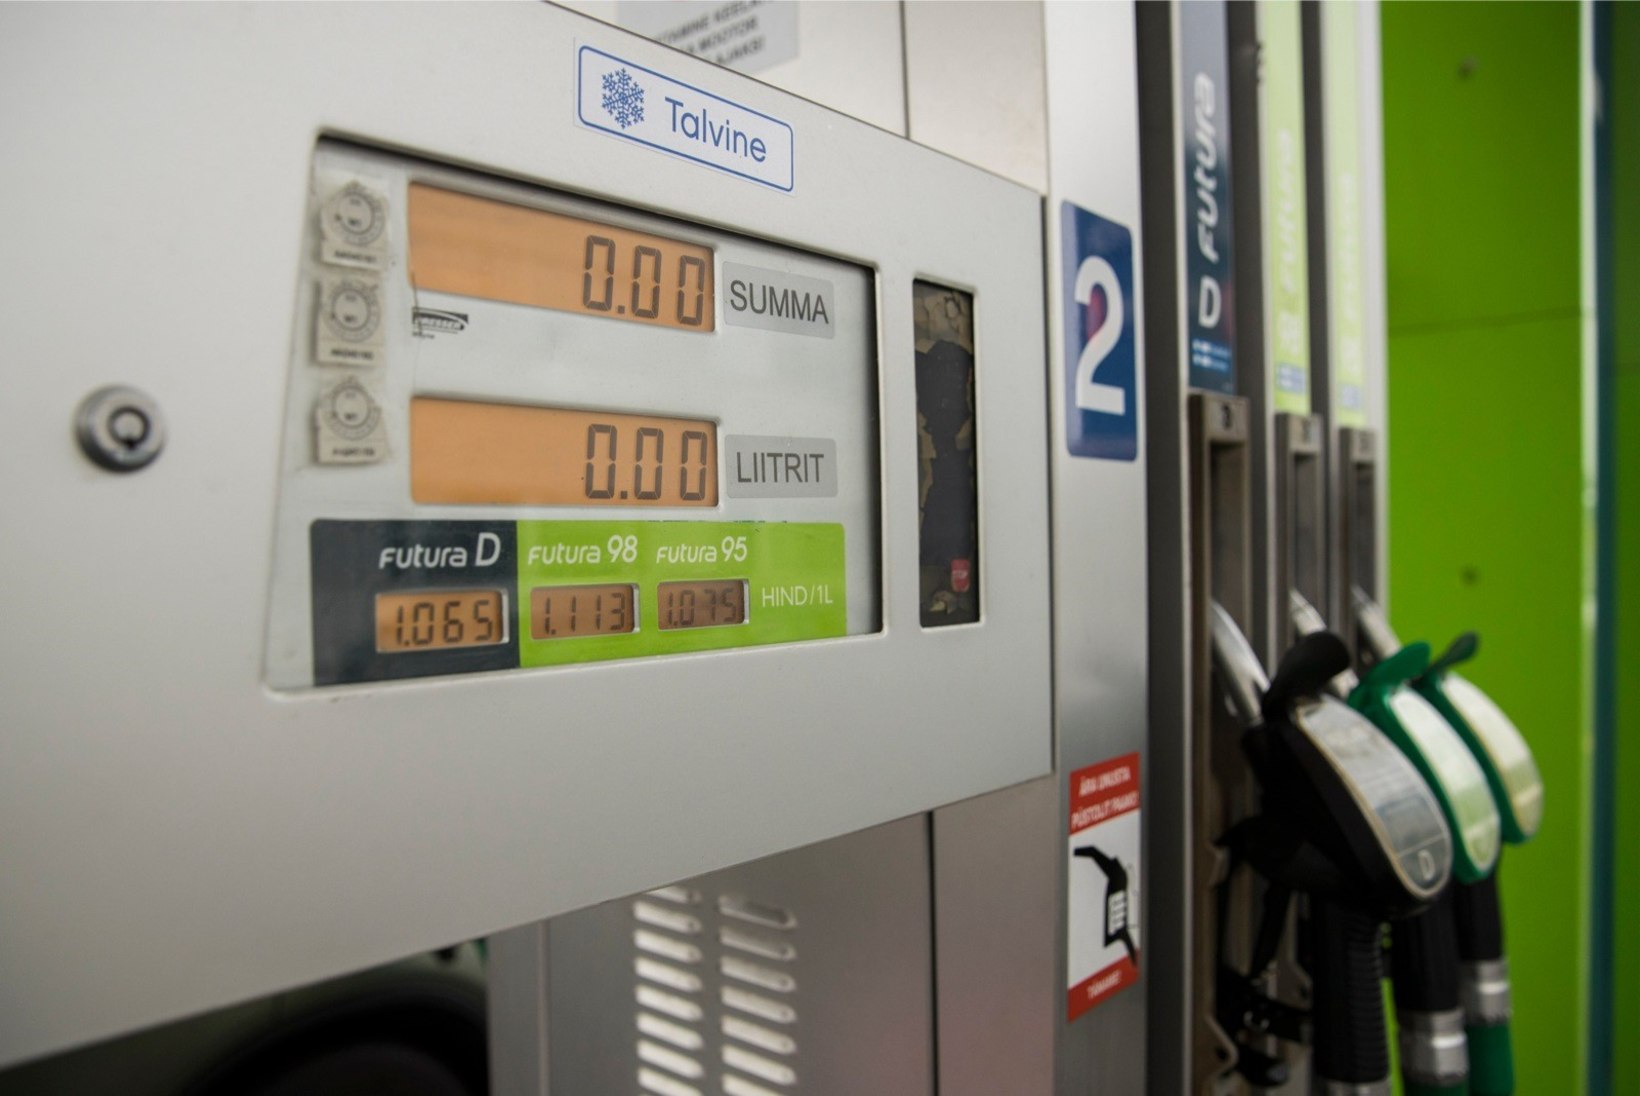 HINNAPOMM: Neste laskis kütuse hulgihinna tasemele, teised riburada järel